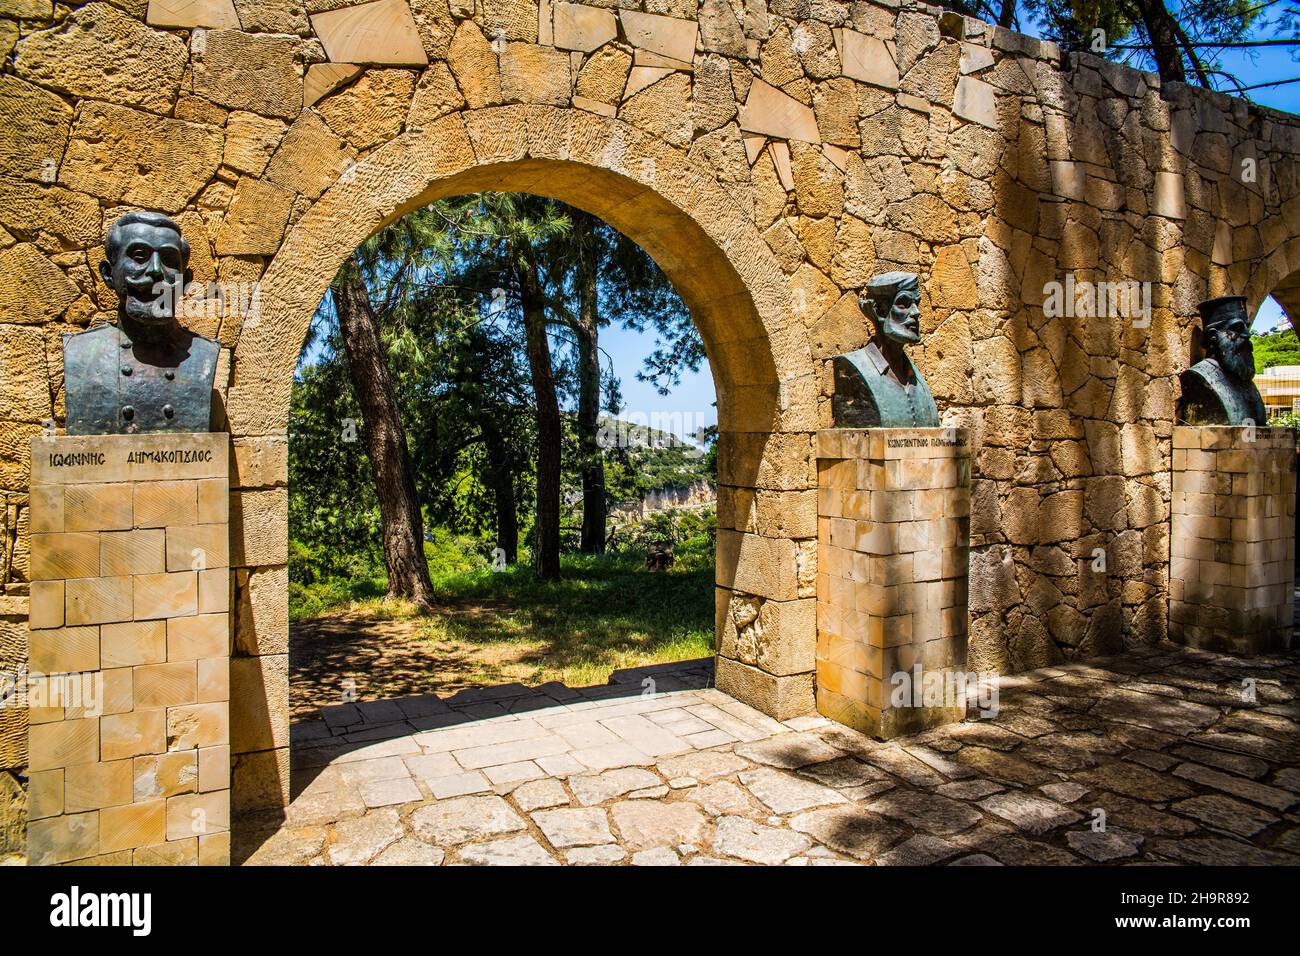 Monumento al Aufstaentischen, monumento nazionale più importante di Creta, Moni Arkadi, Moni Arkadi, Creta, Grecia Foto Stock